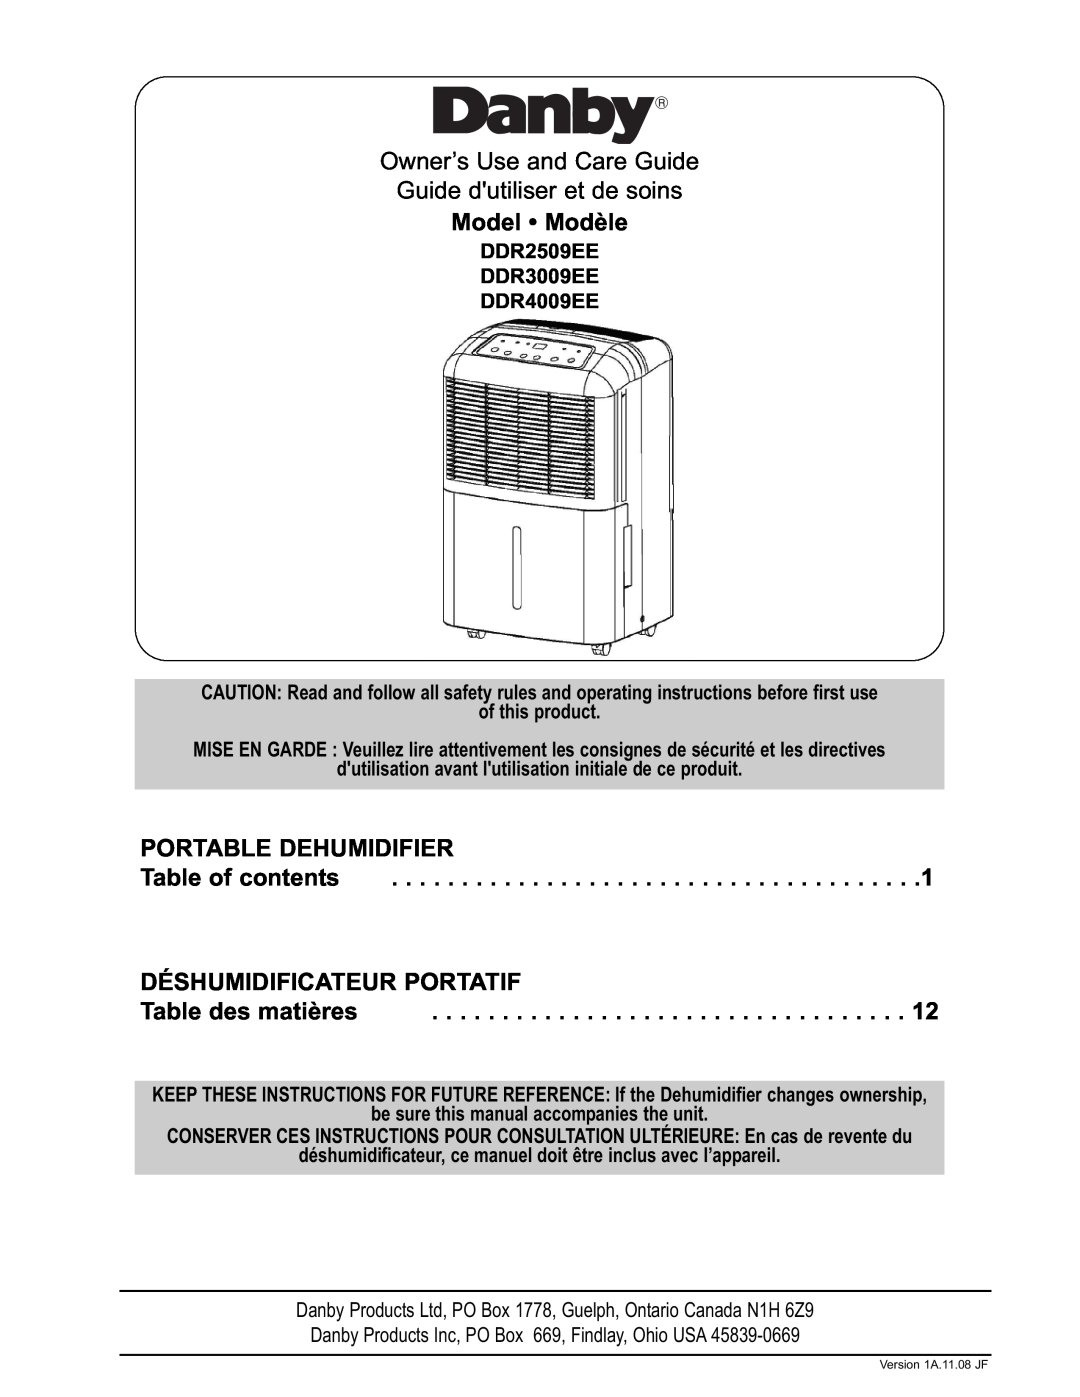 Danby DDR2509EE manual Model Modèle, Portable Dehumidifier, Table of contents, Déshumidificateur Portatif 